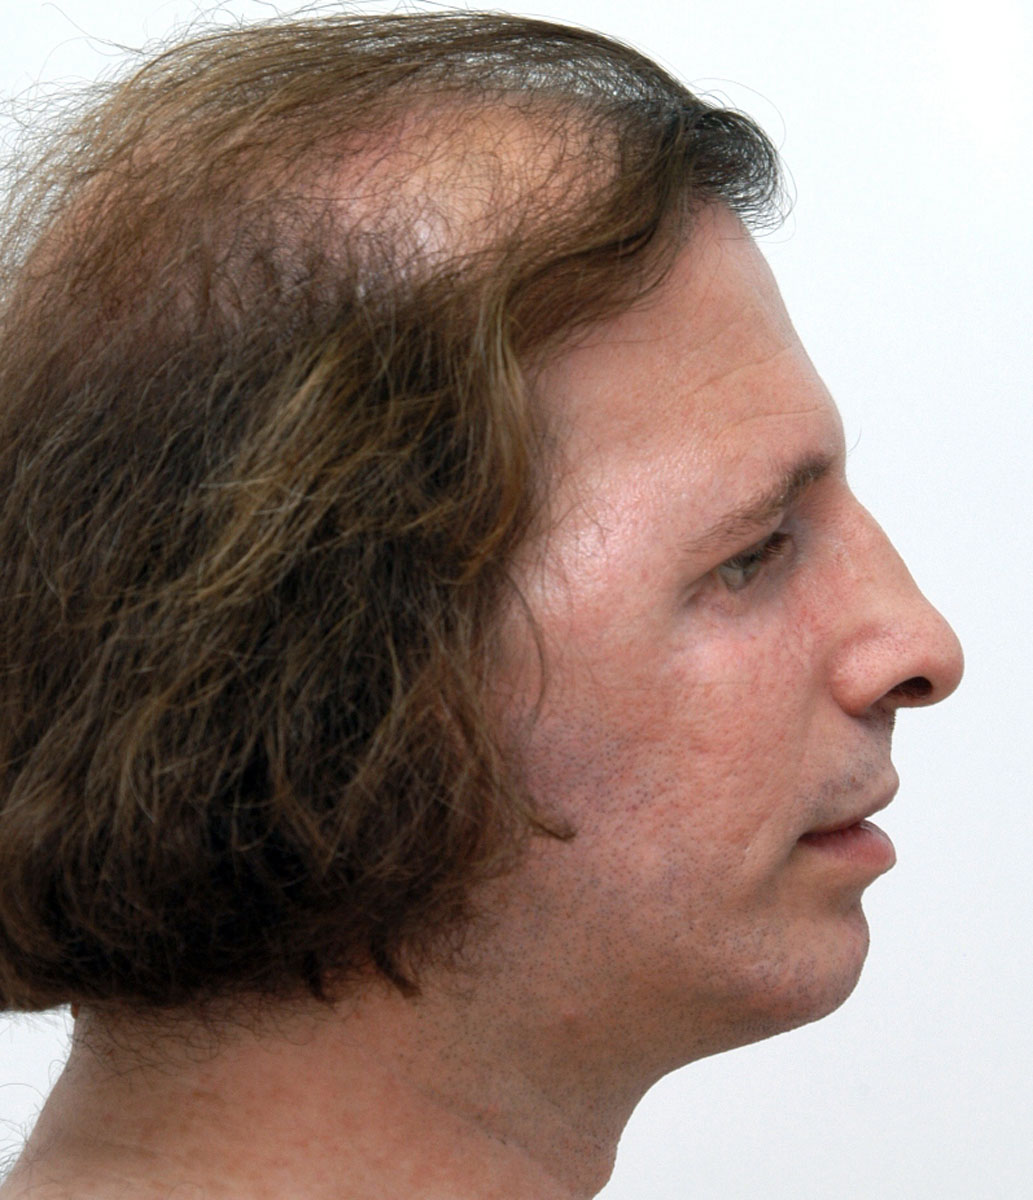 treacher-collins-syndrome-hellenic-craniofacial-center